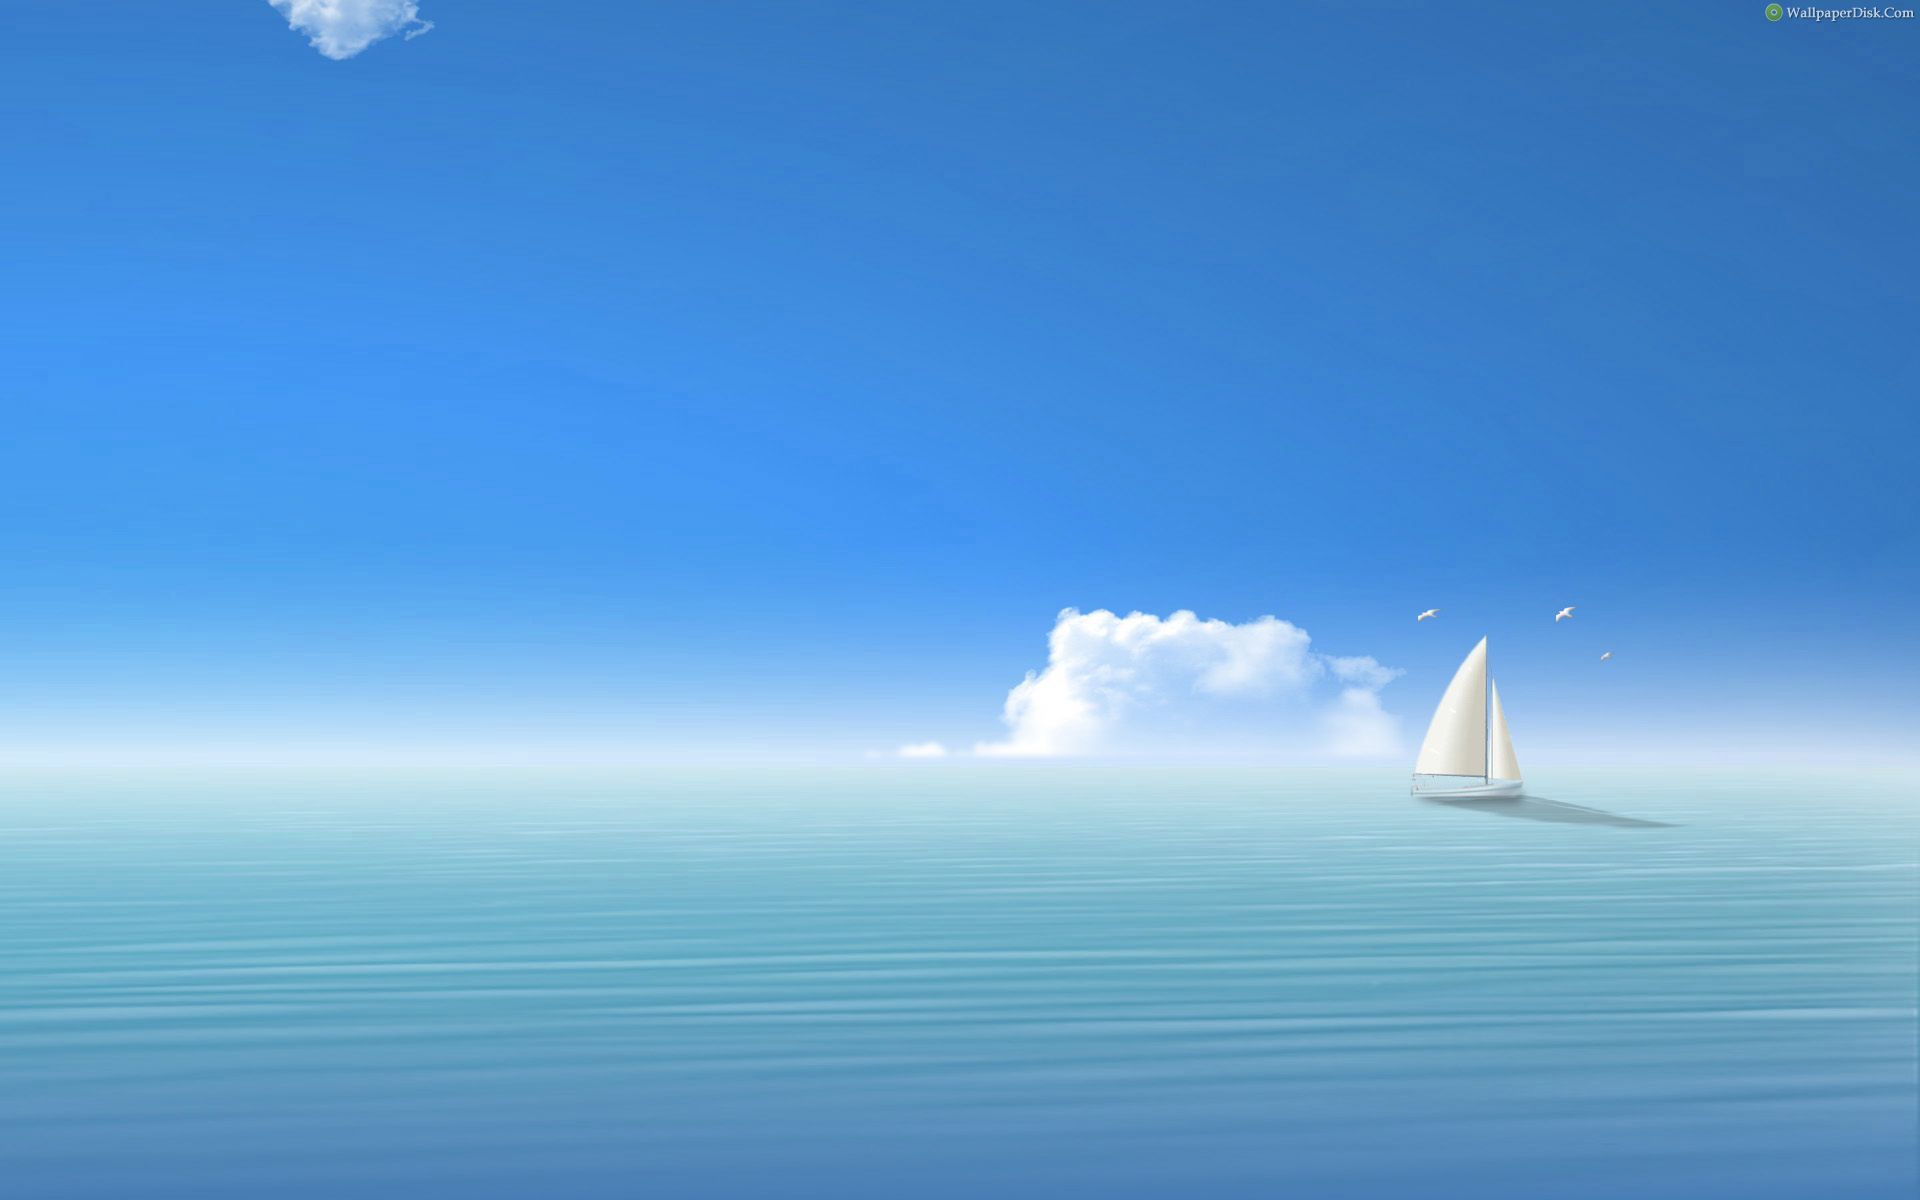 Vast Blue Sea. Ocean Wallpaper, Ocean Sky, Boat Illustration